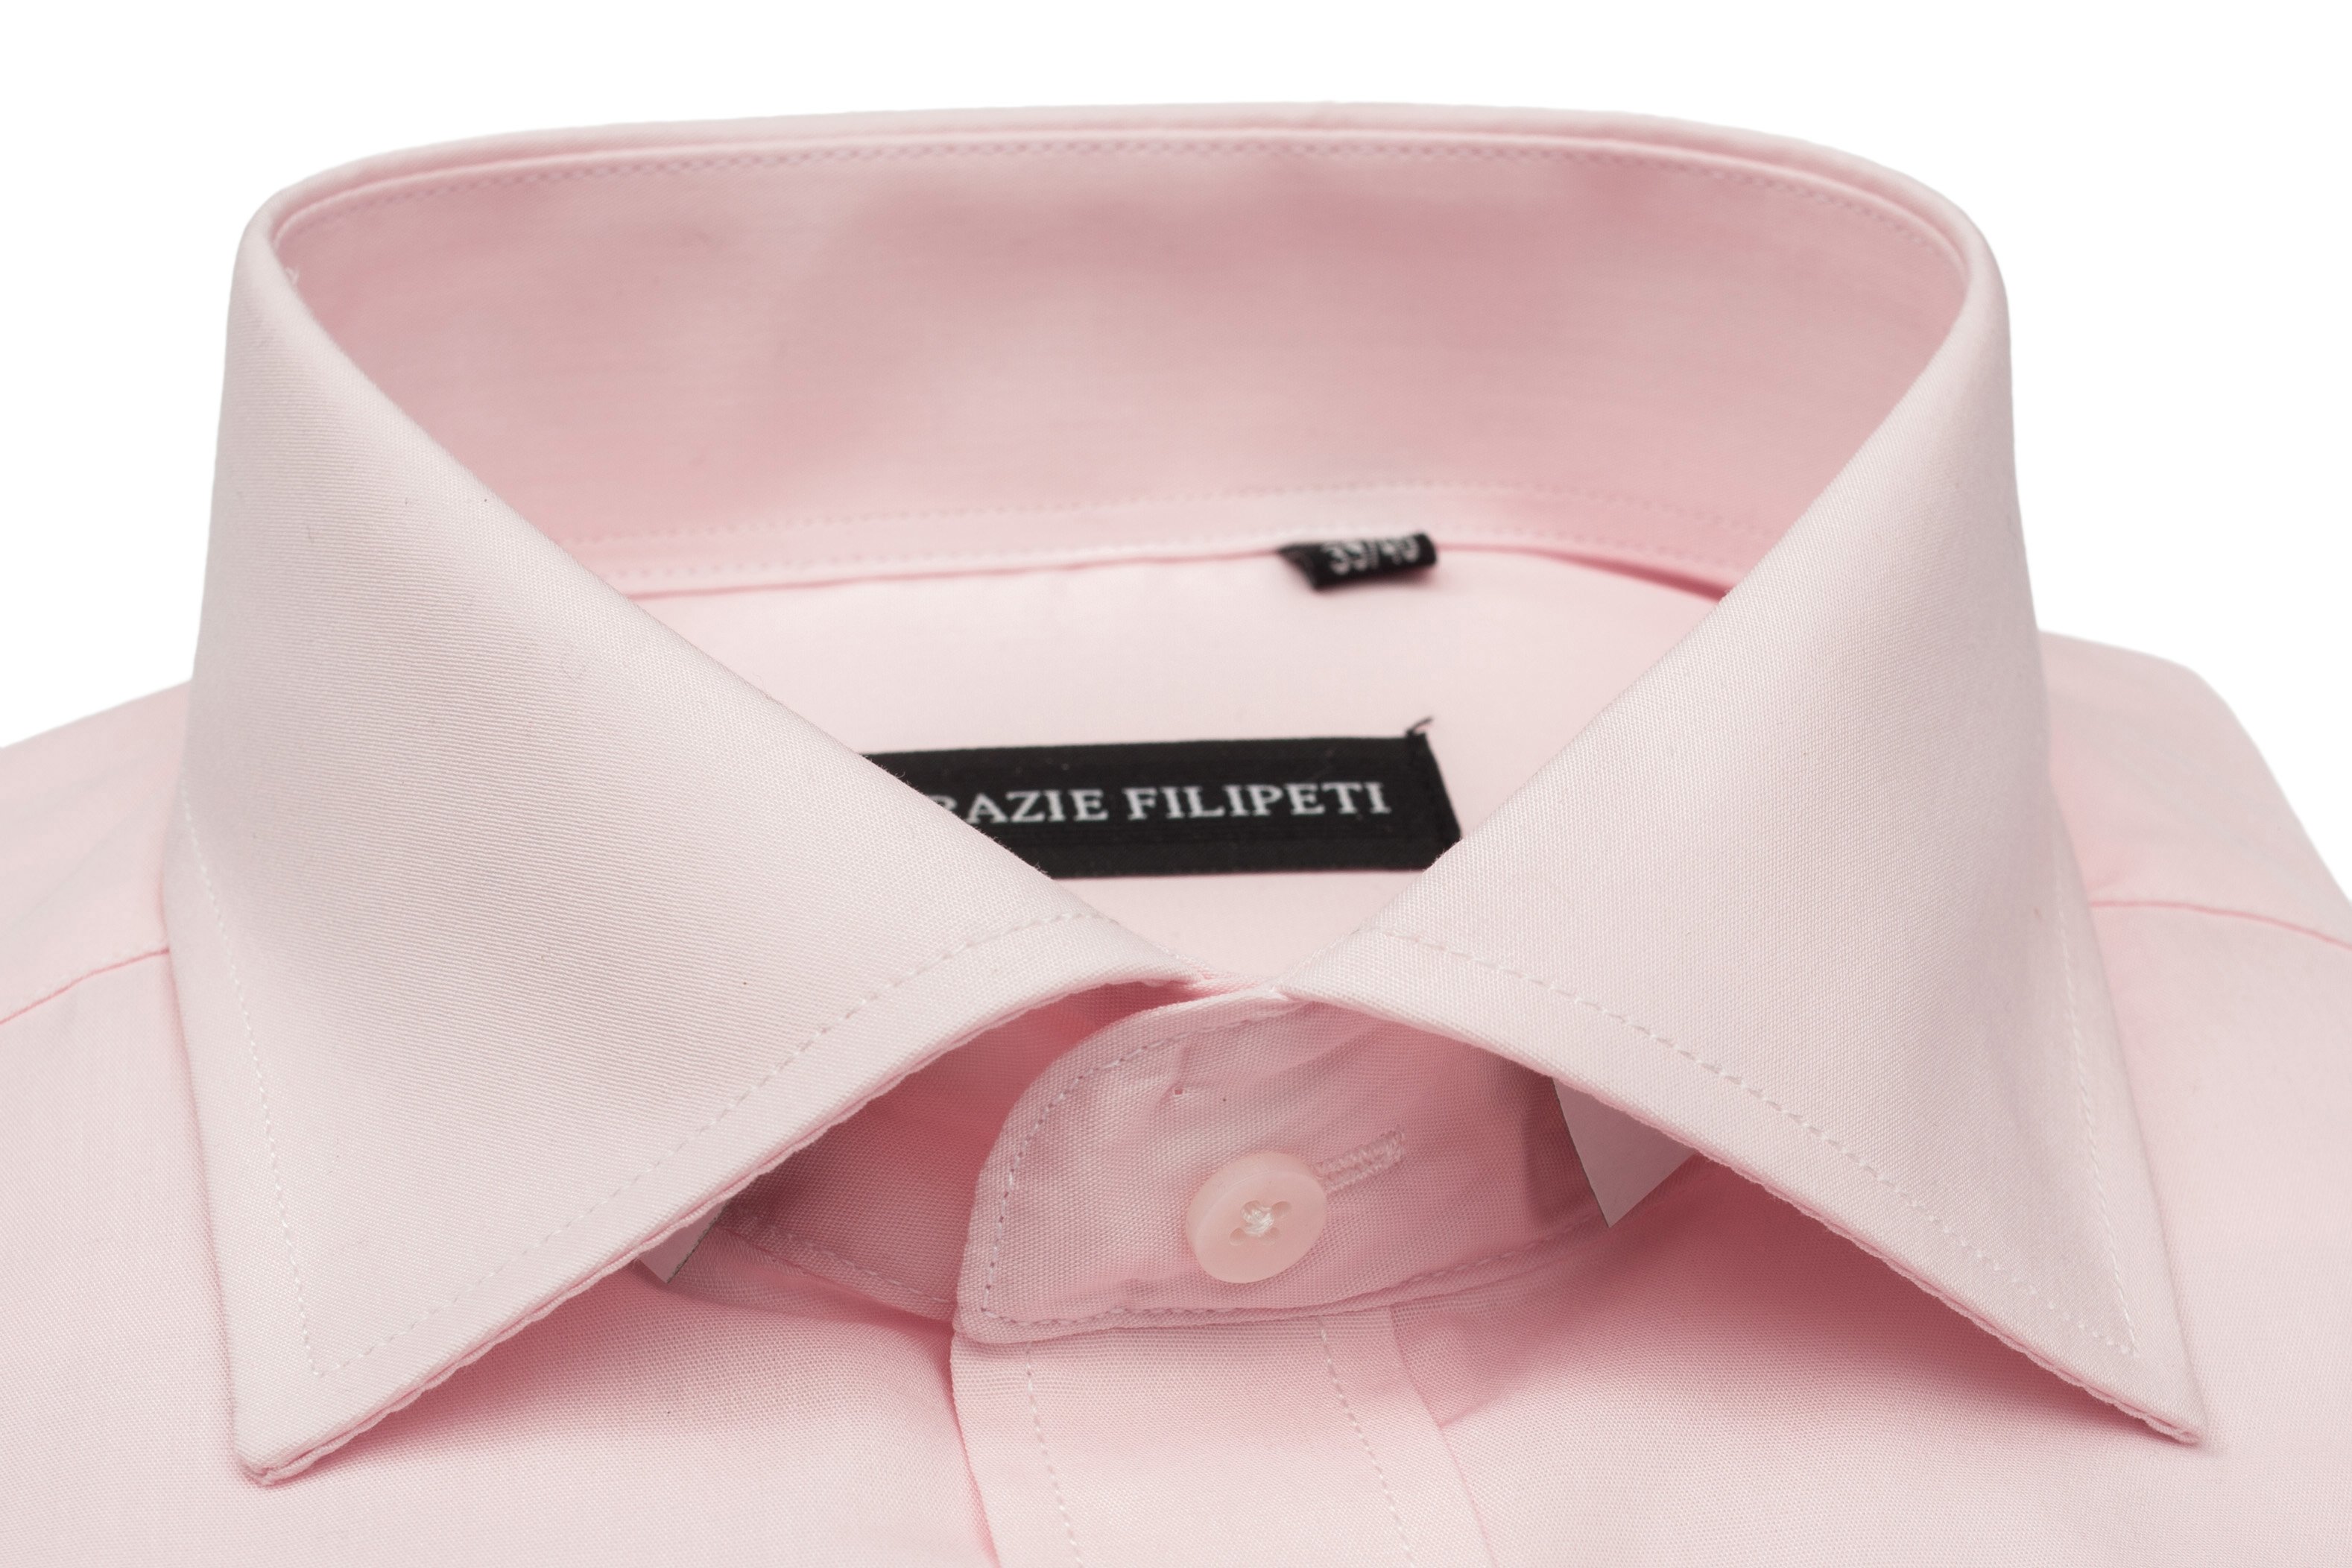 Camasa barbati Clasica roz pentru butoni Grazie Filipeti